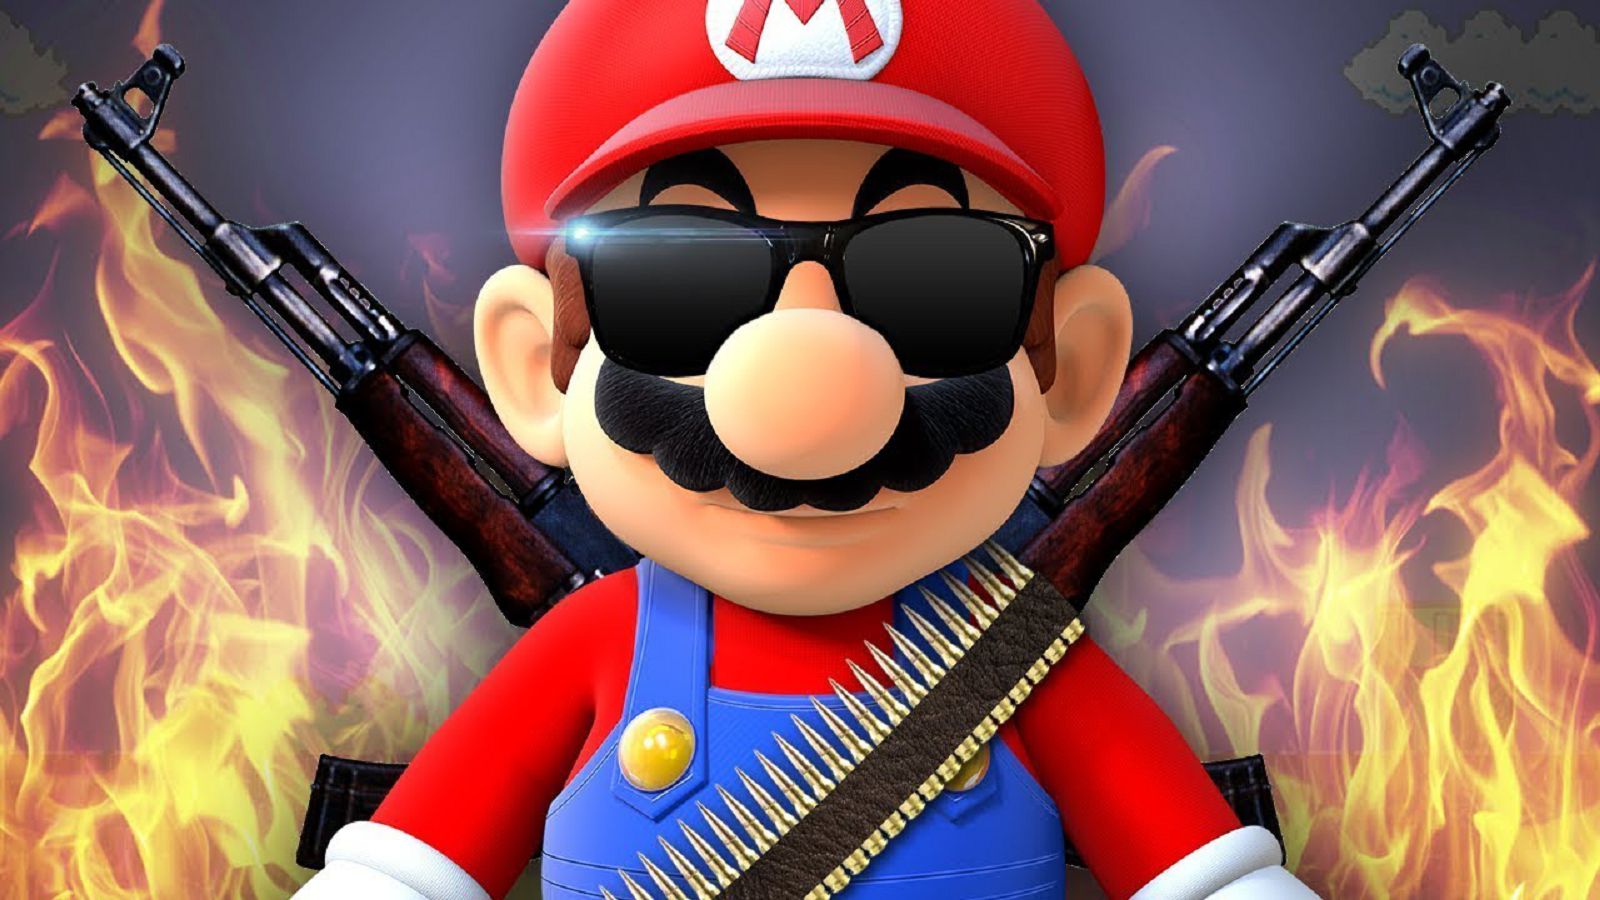 Miyamoto non ha nulla contro i giochi violenti, ma Super Mario non andrà in giro con una pistola